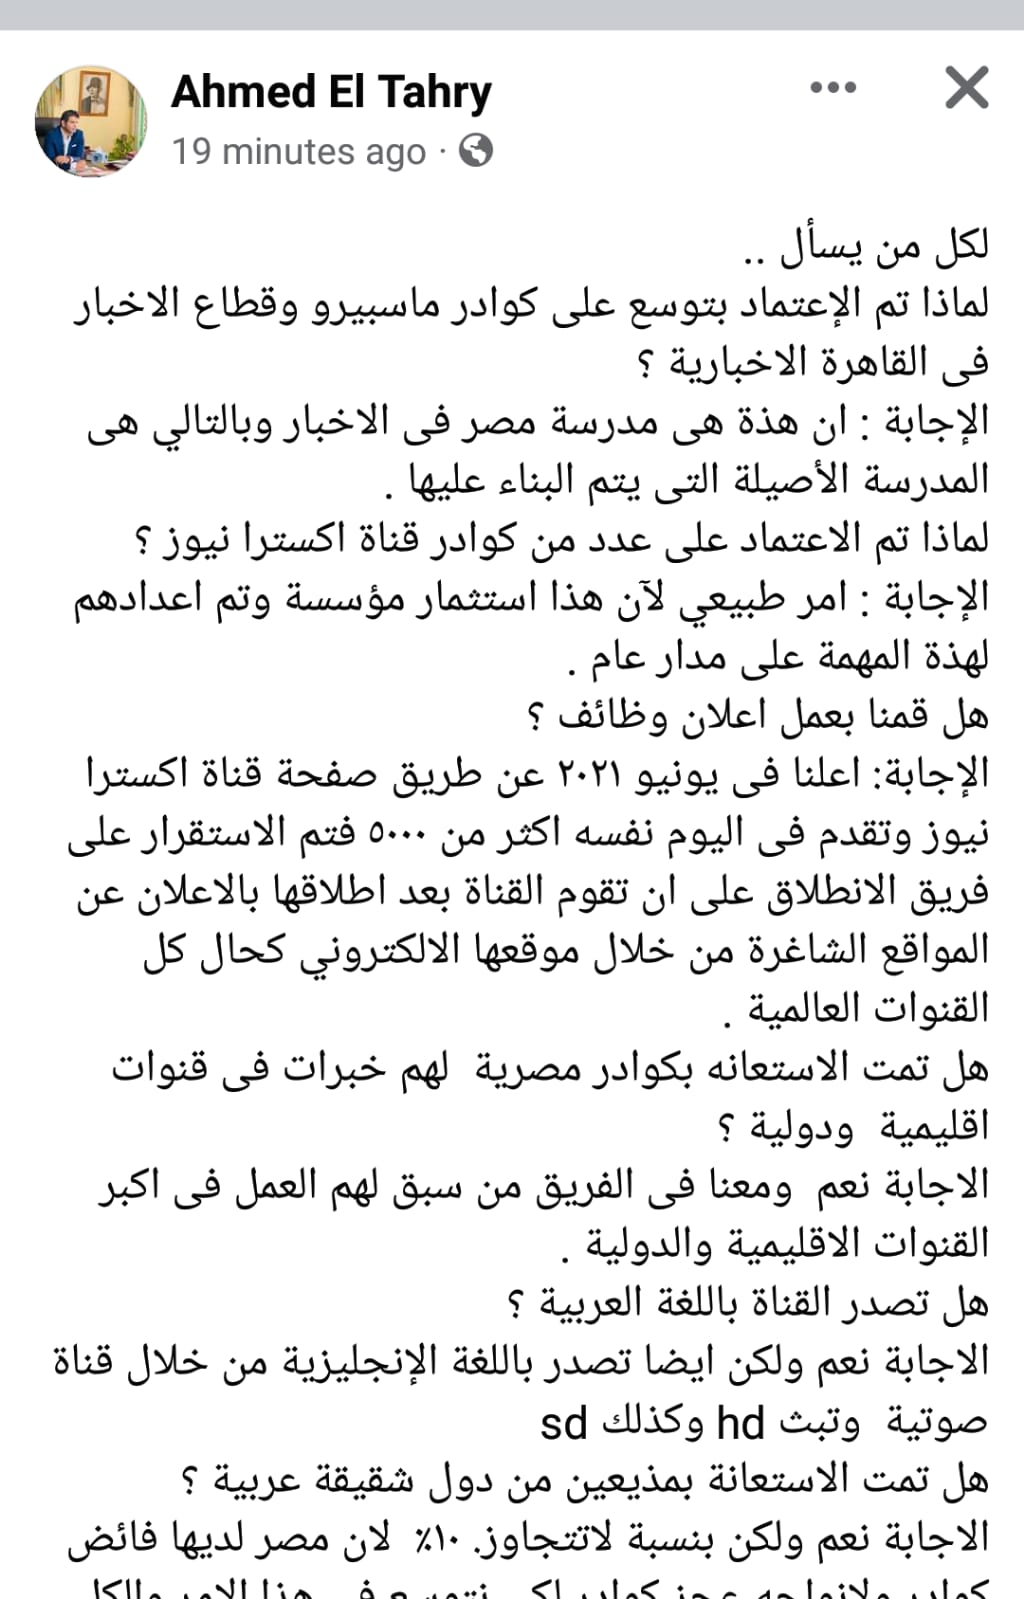 احمد الطاهري عبر فيس بوك